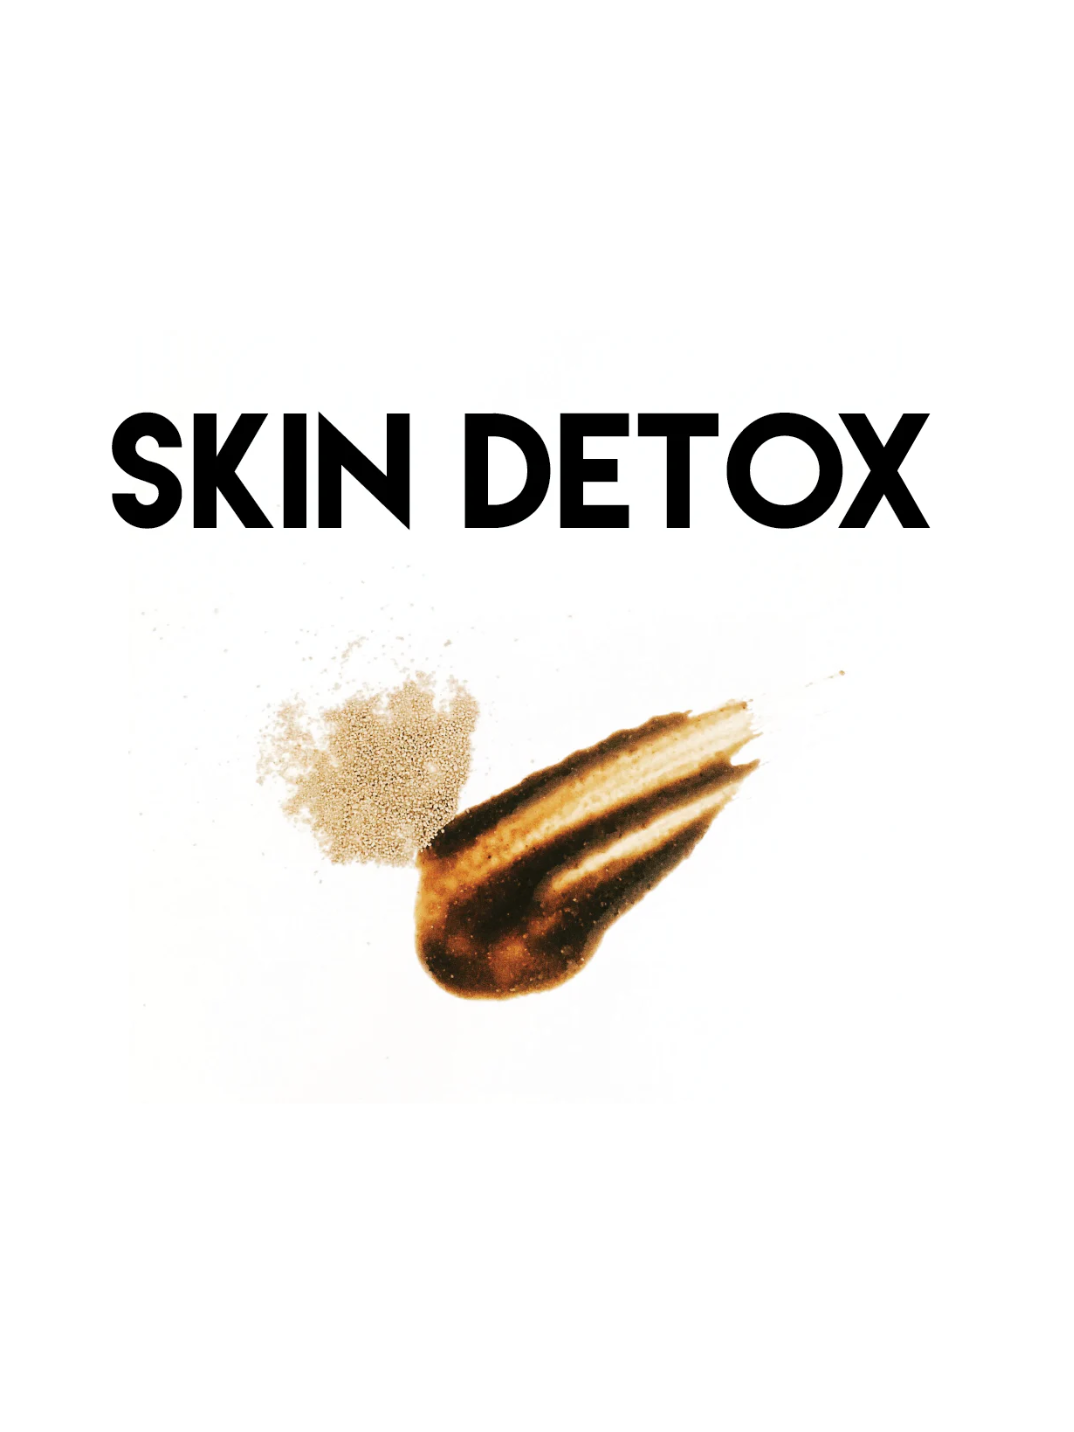 skin detox